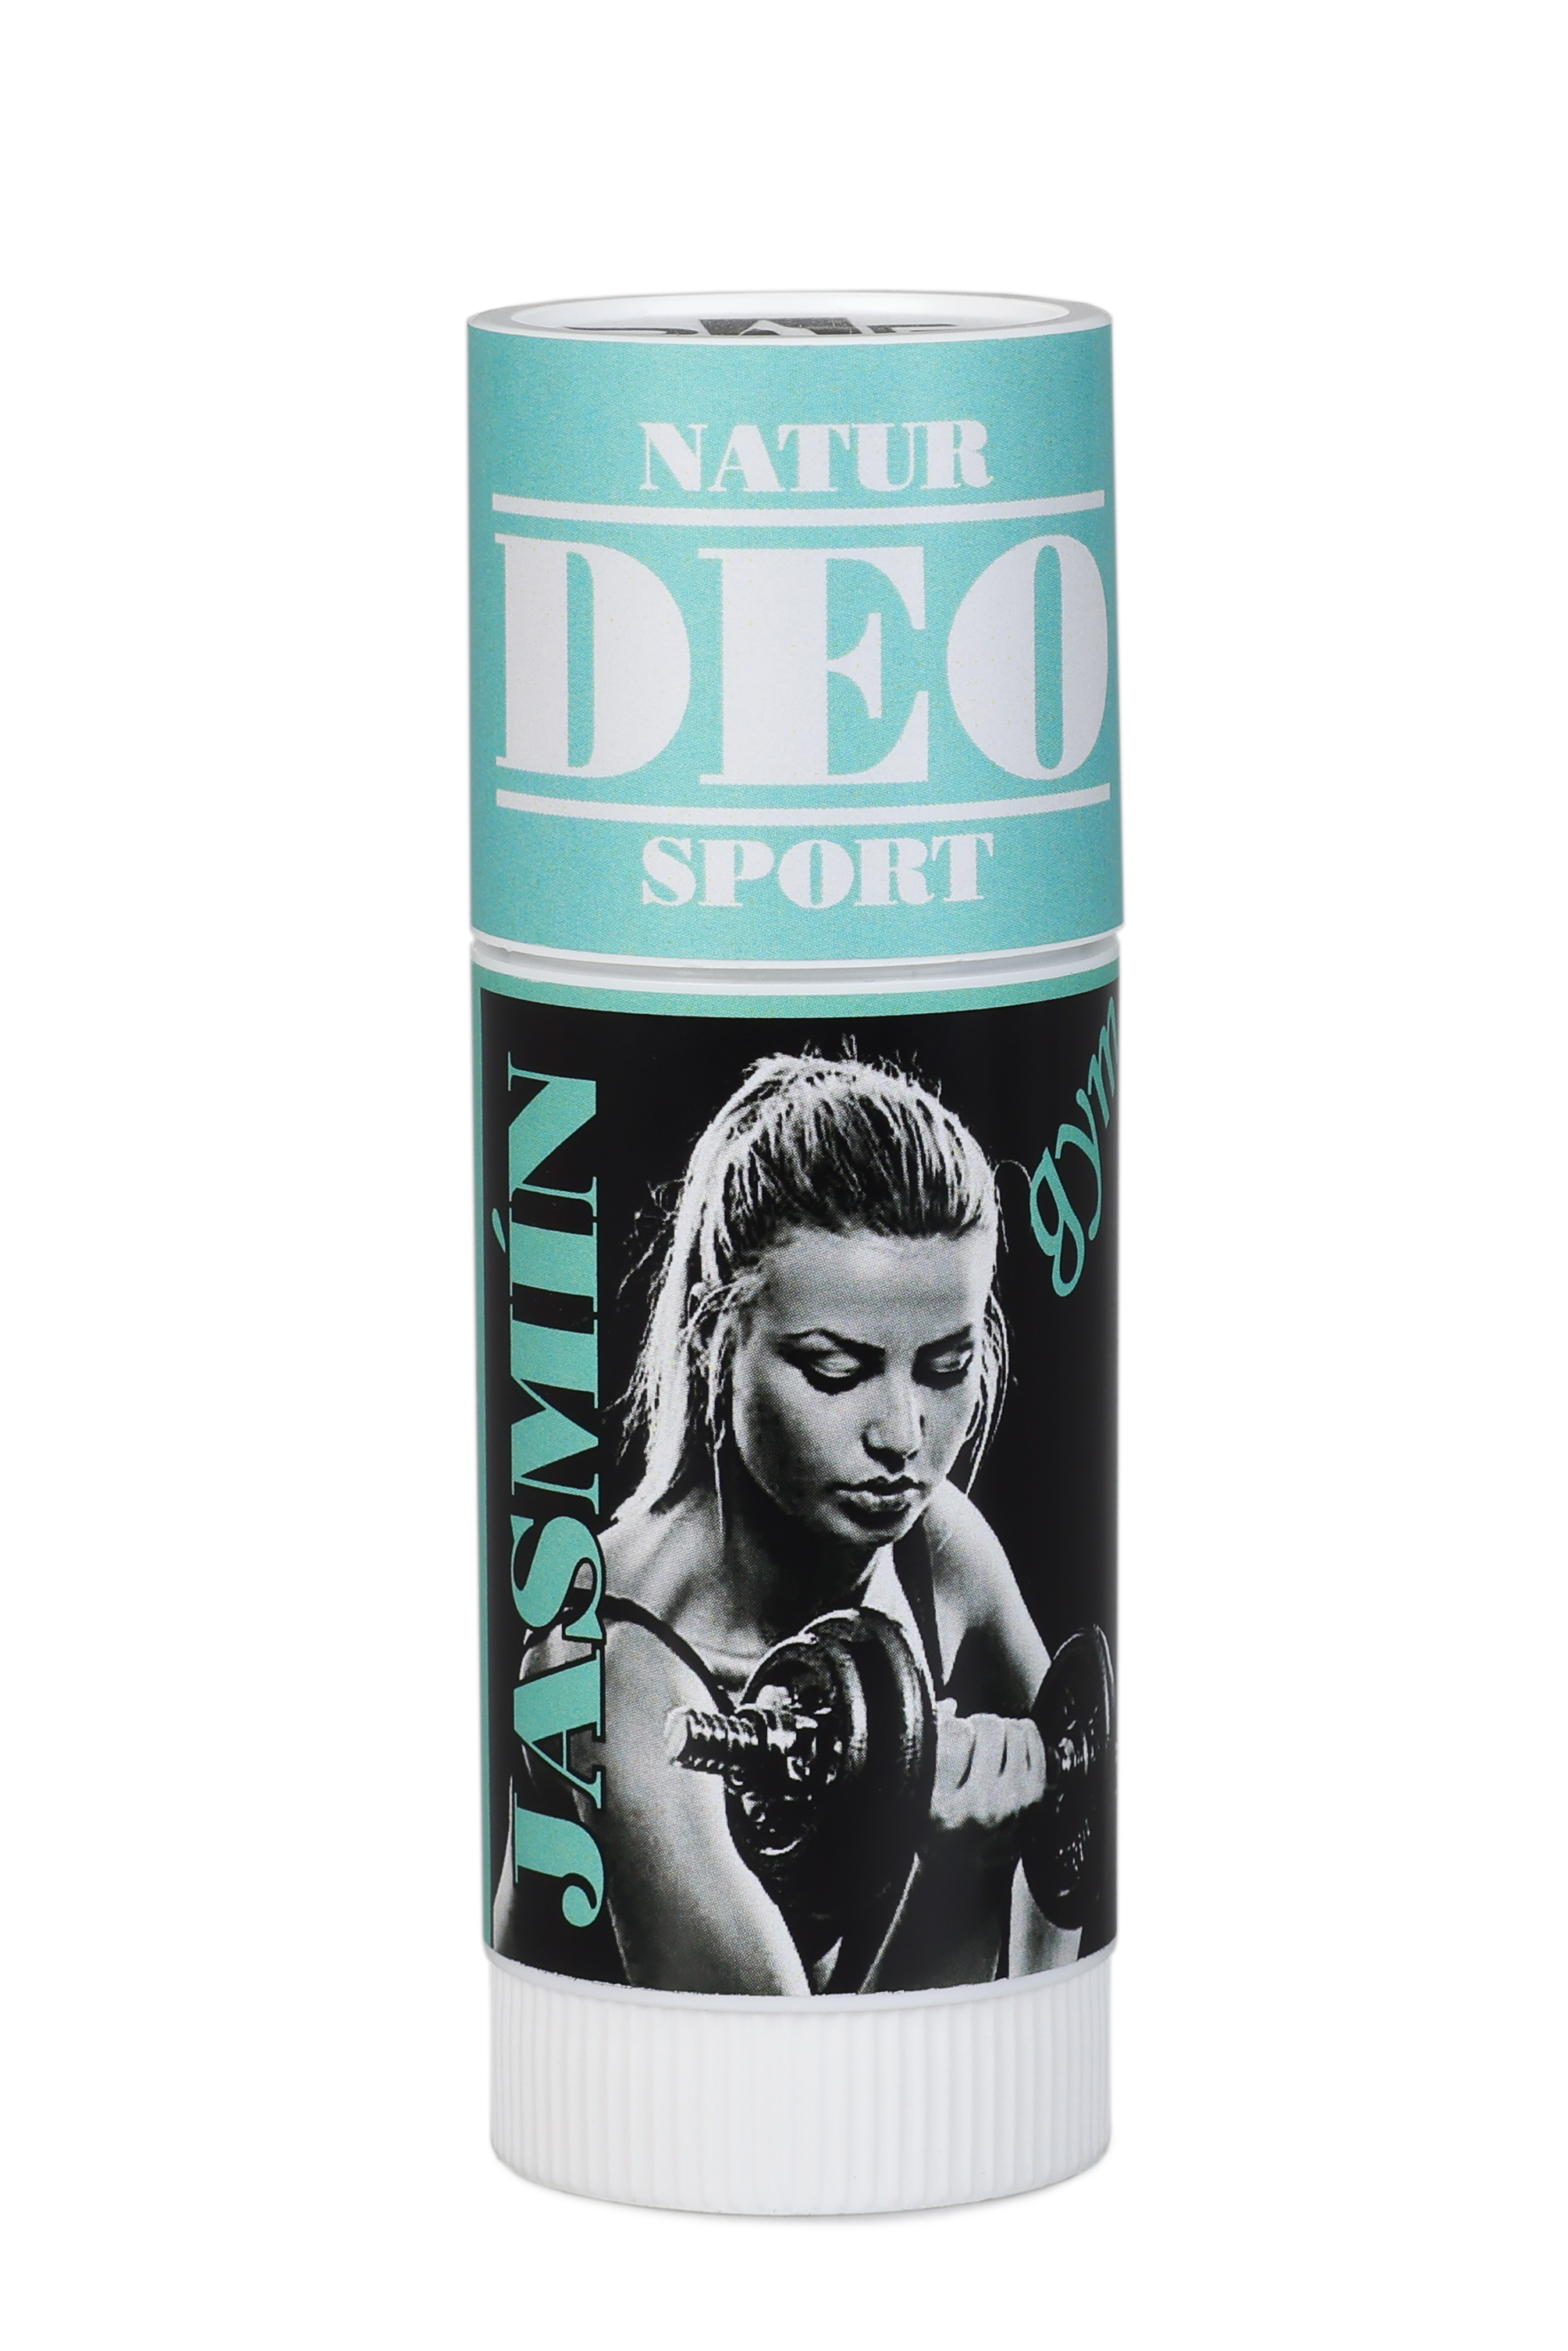 Natur sport deodorant jasmín 25 ml